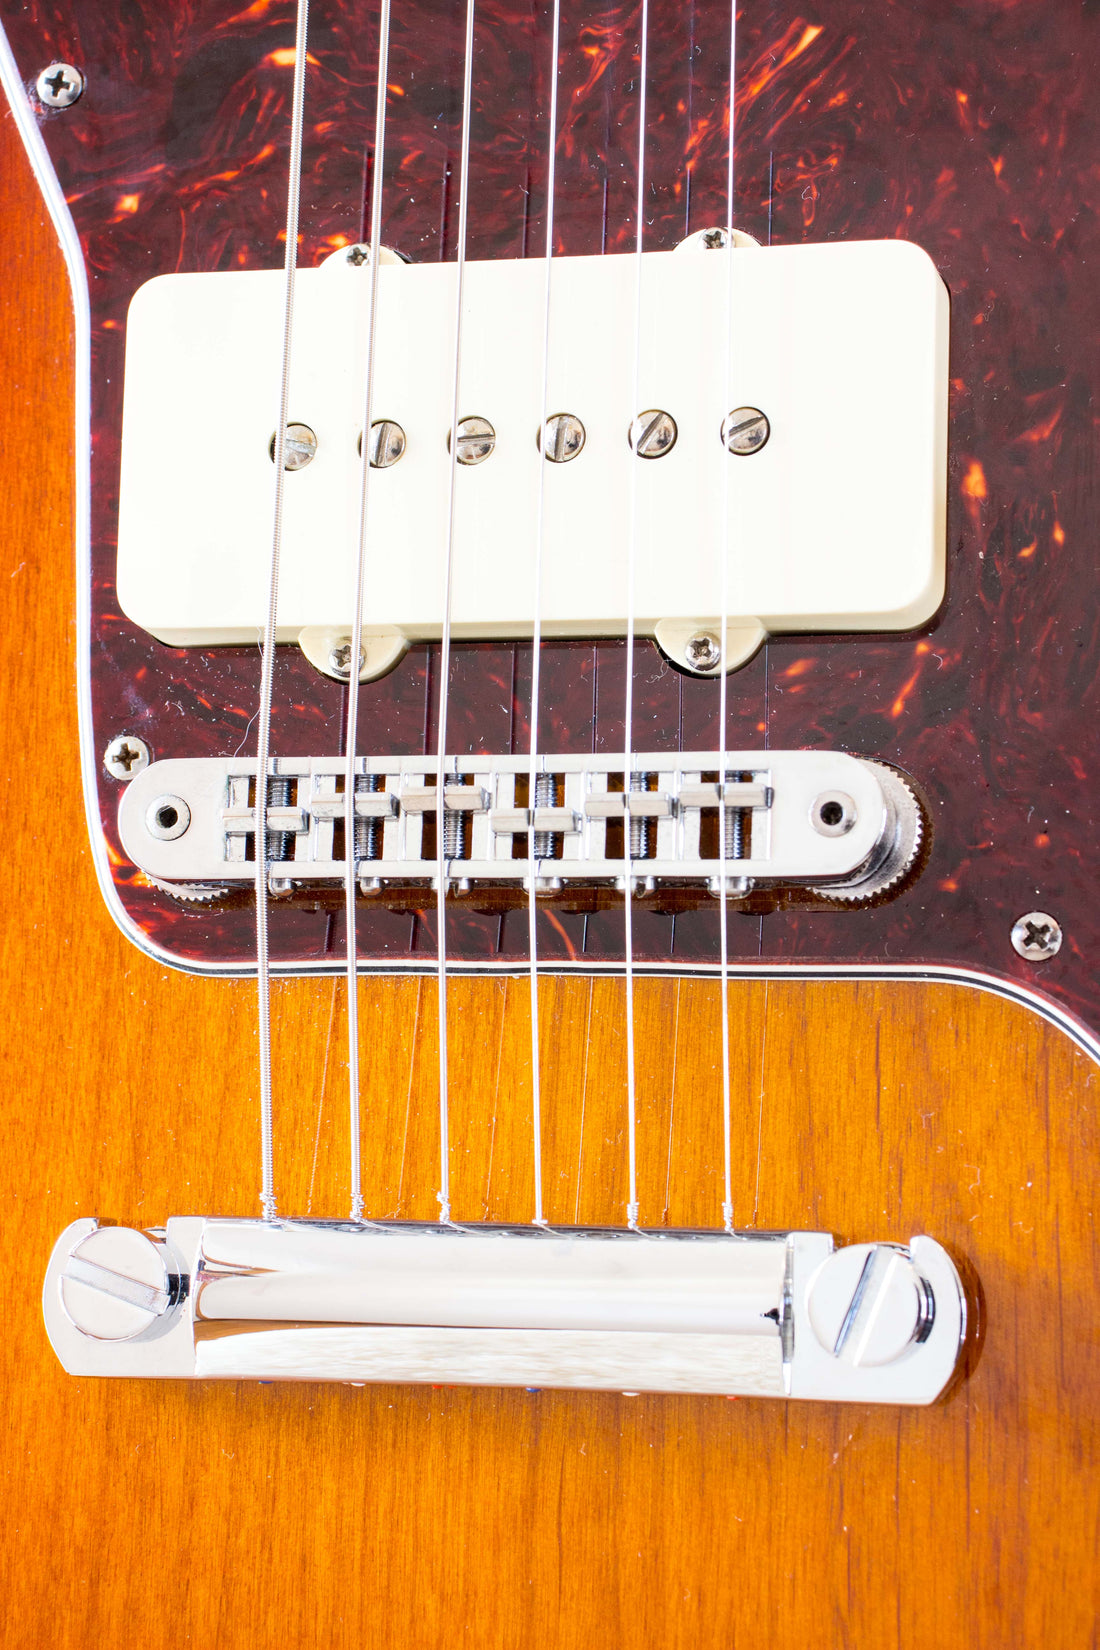 Fender Amercian Special Jazzmaster Sunburst 2013